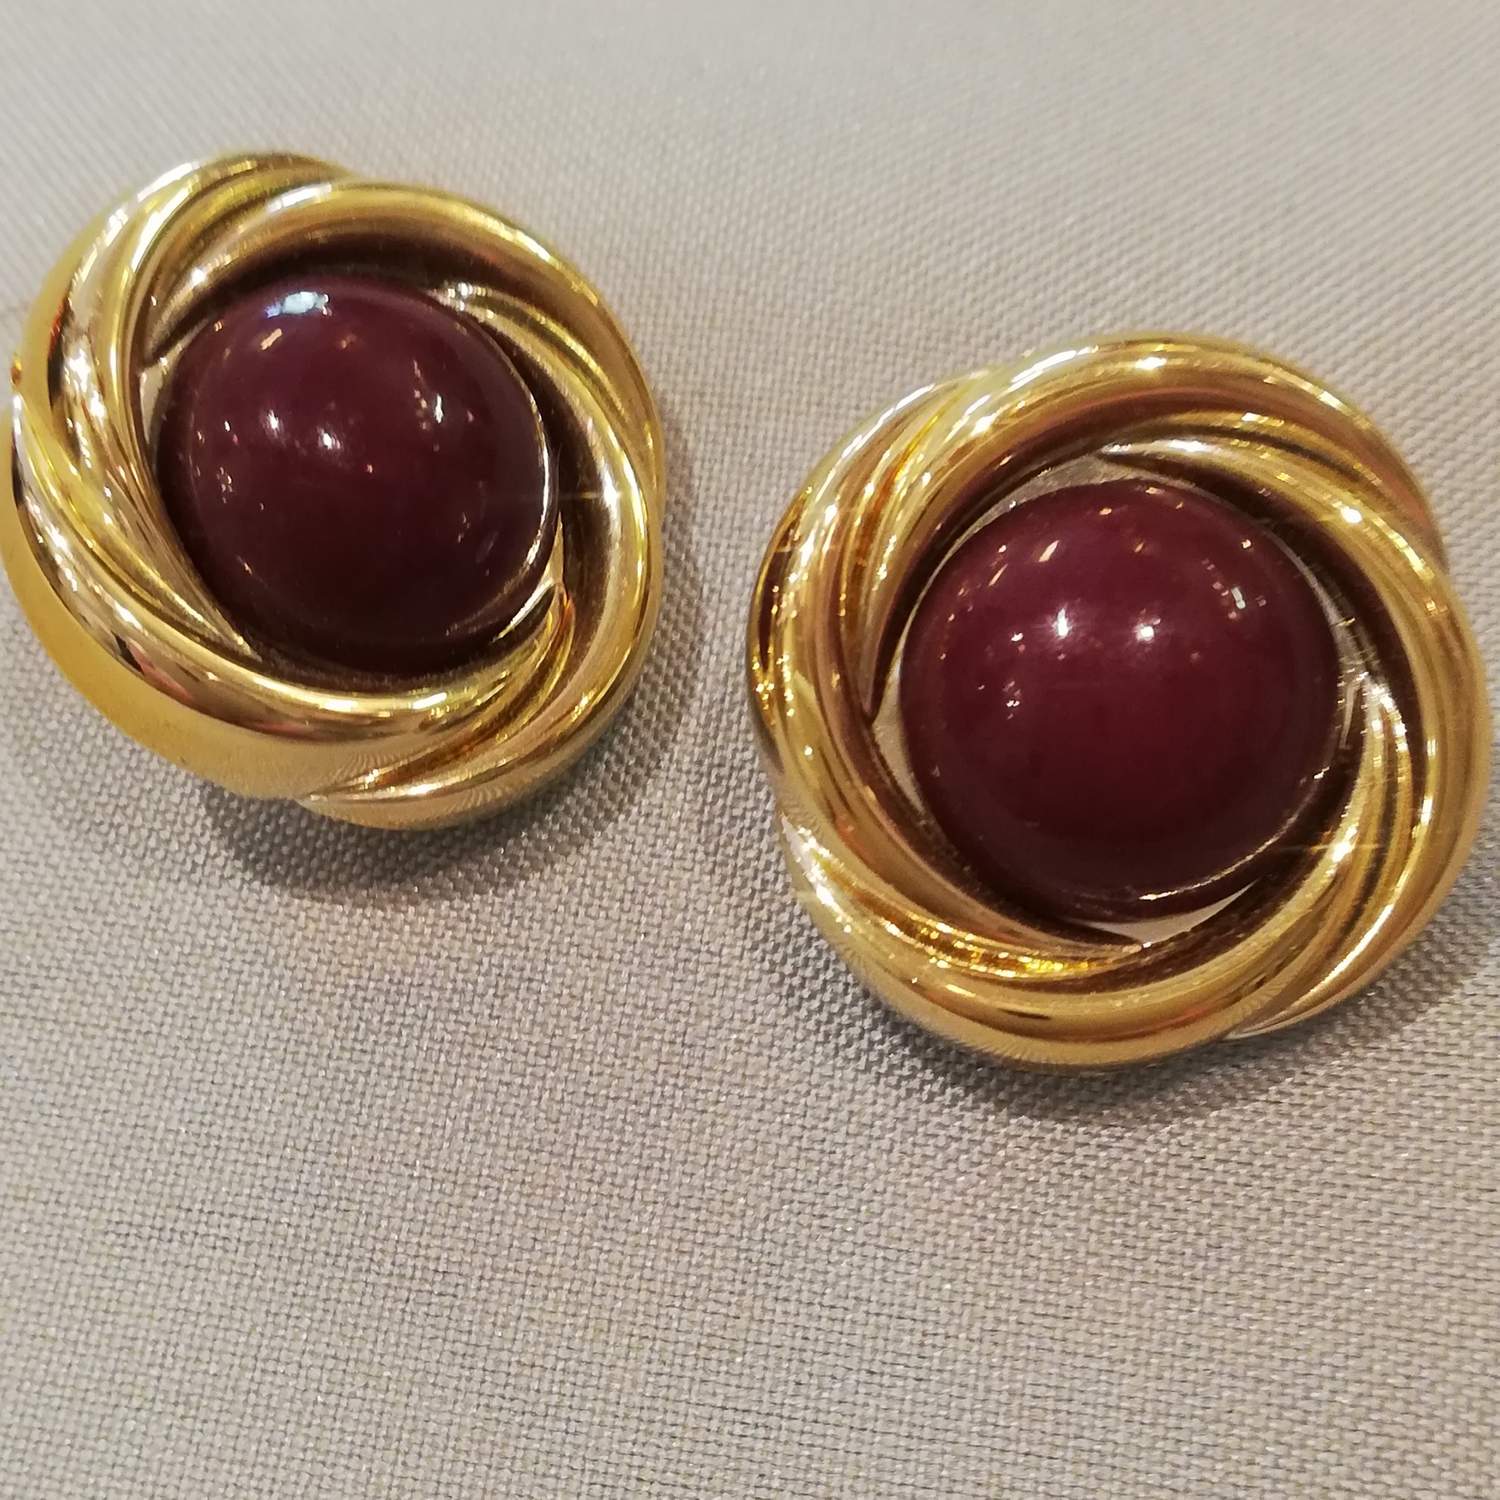 Vintage retro smycke bijouteri örhänge clips runda guldfärgad infattn. Vinröd